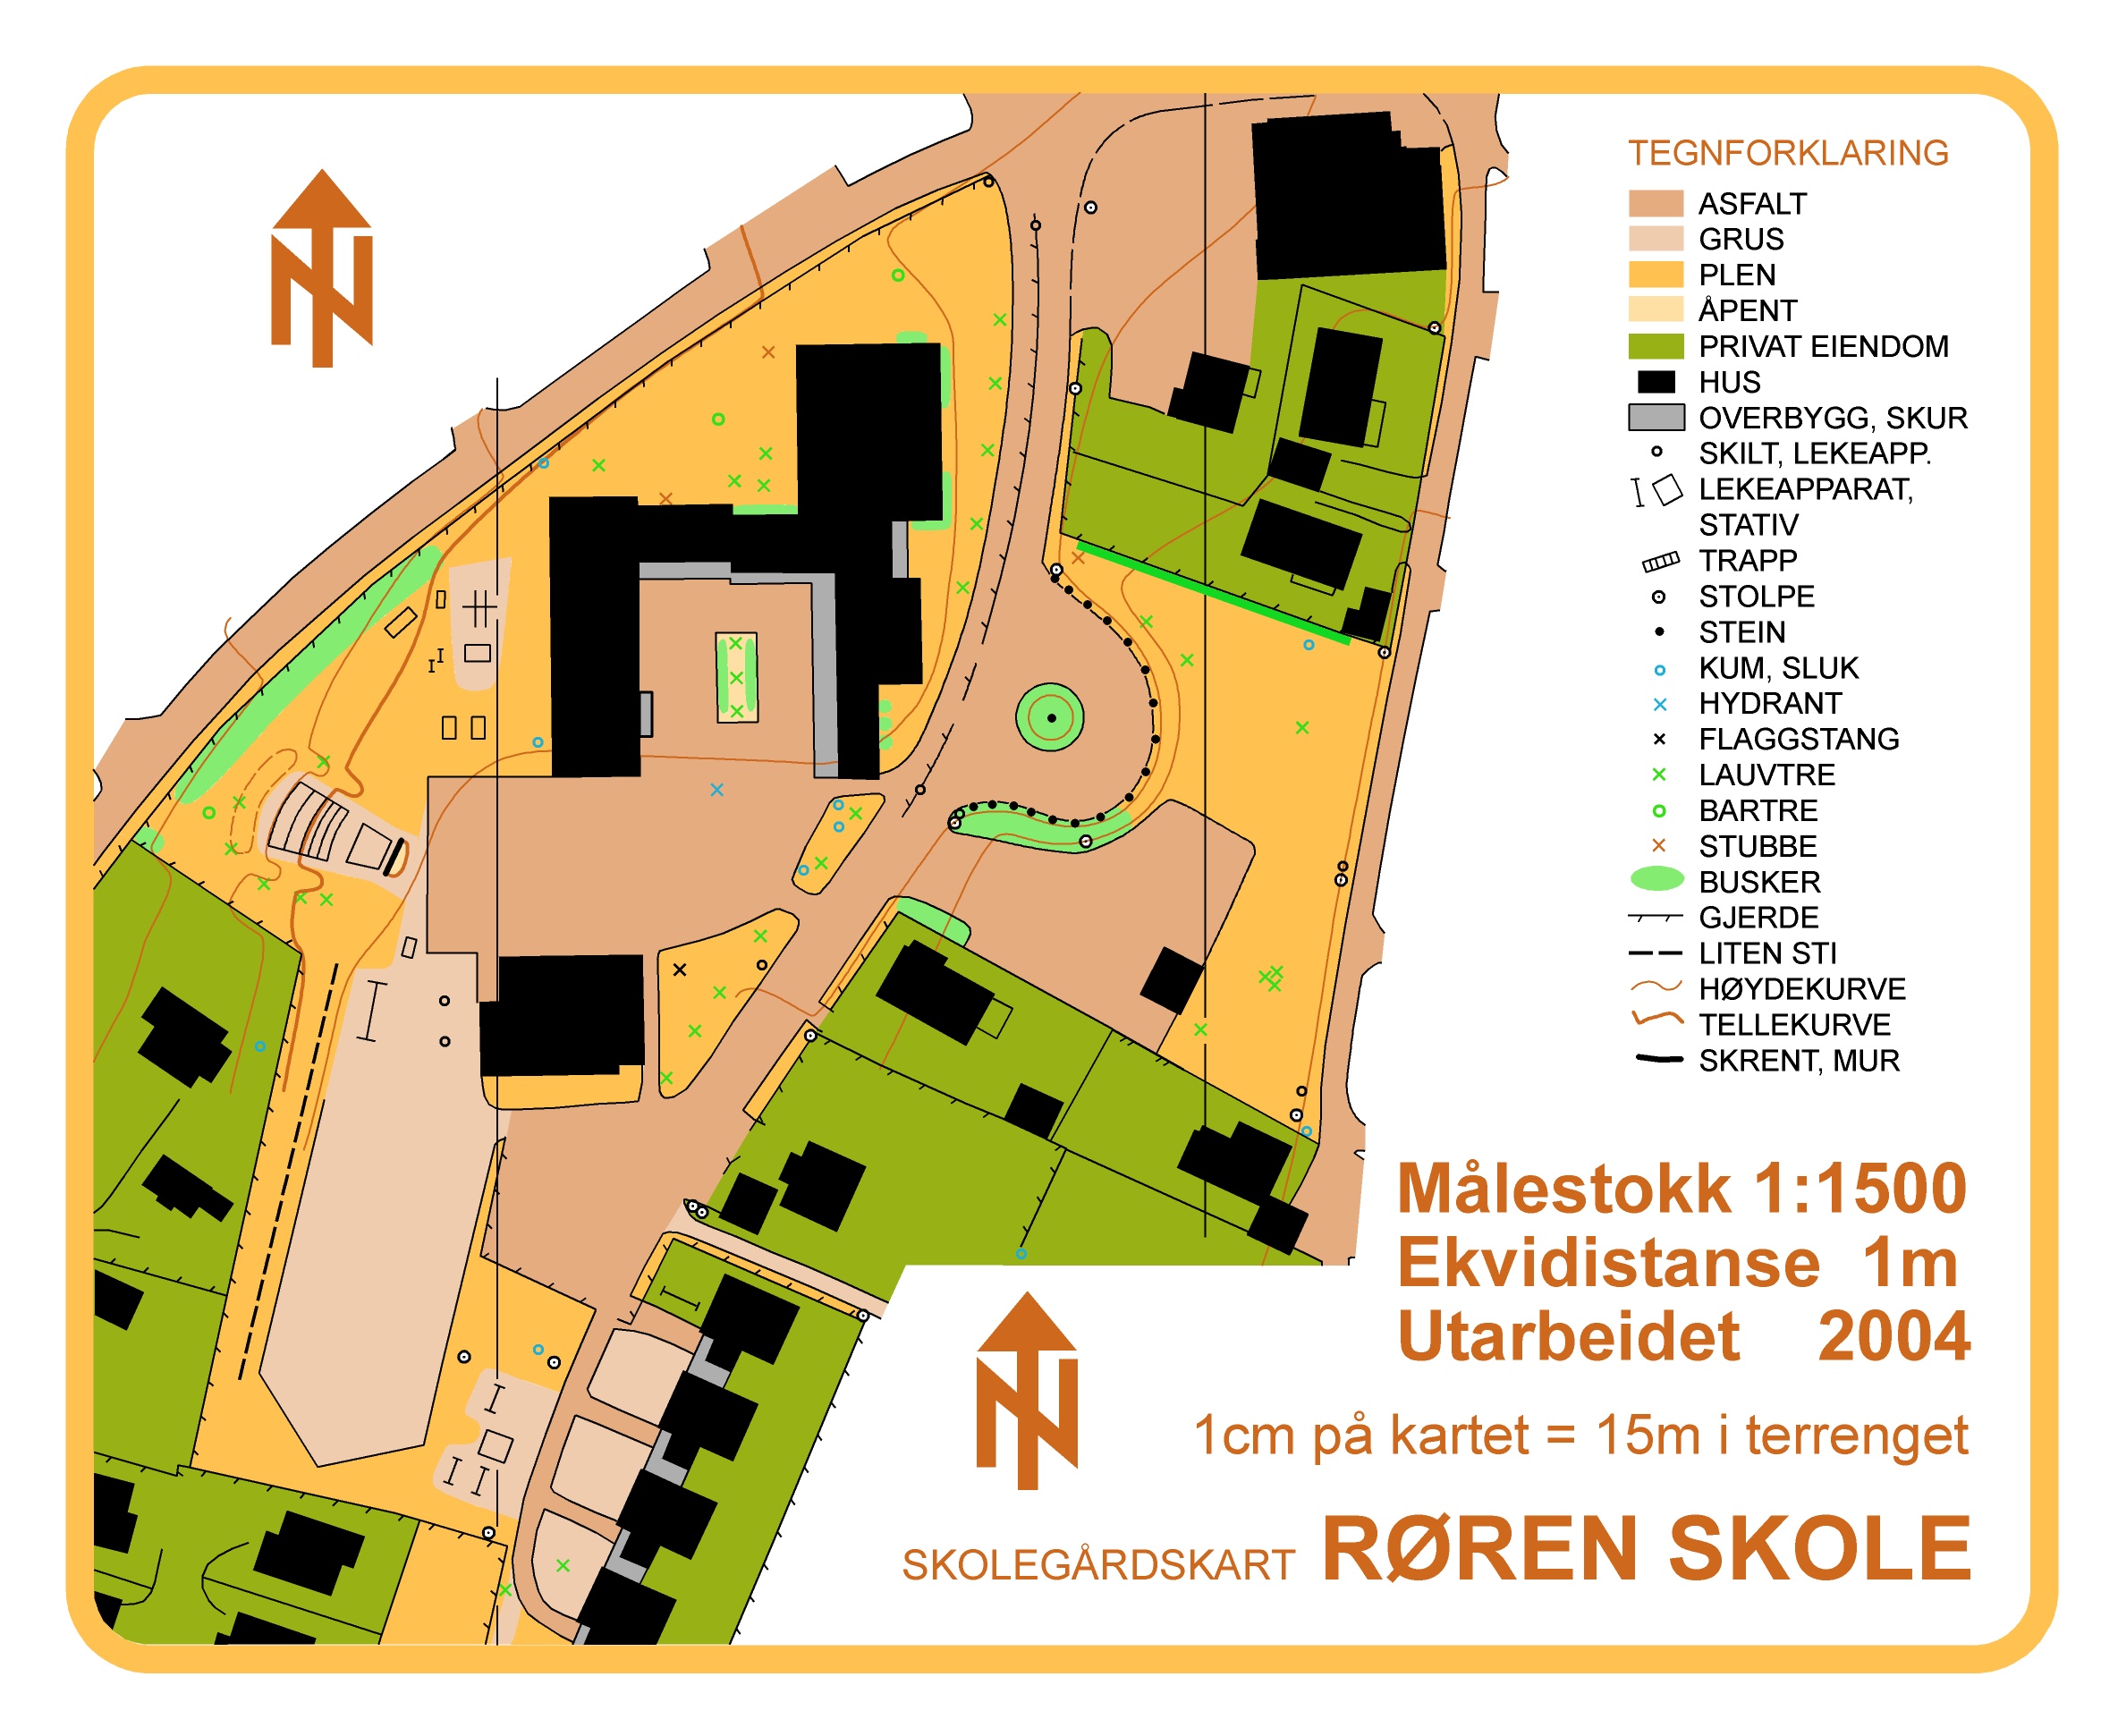 Røren skole (01.01.2004)